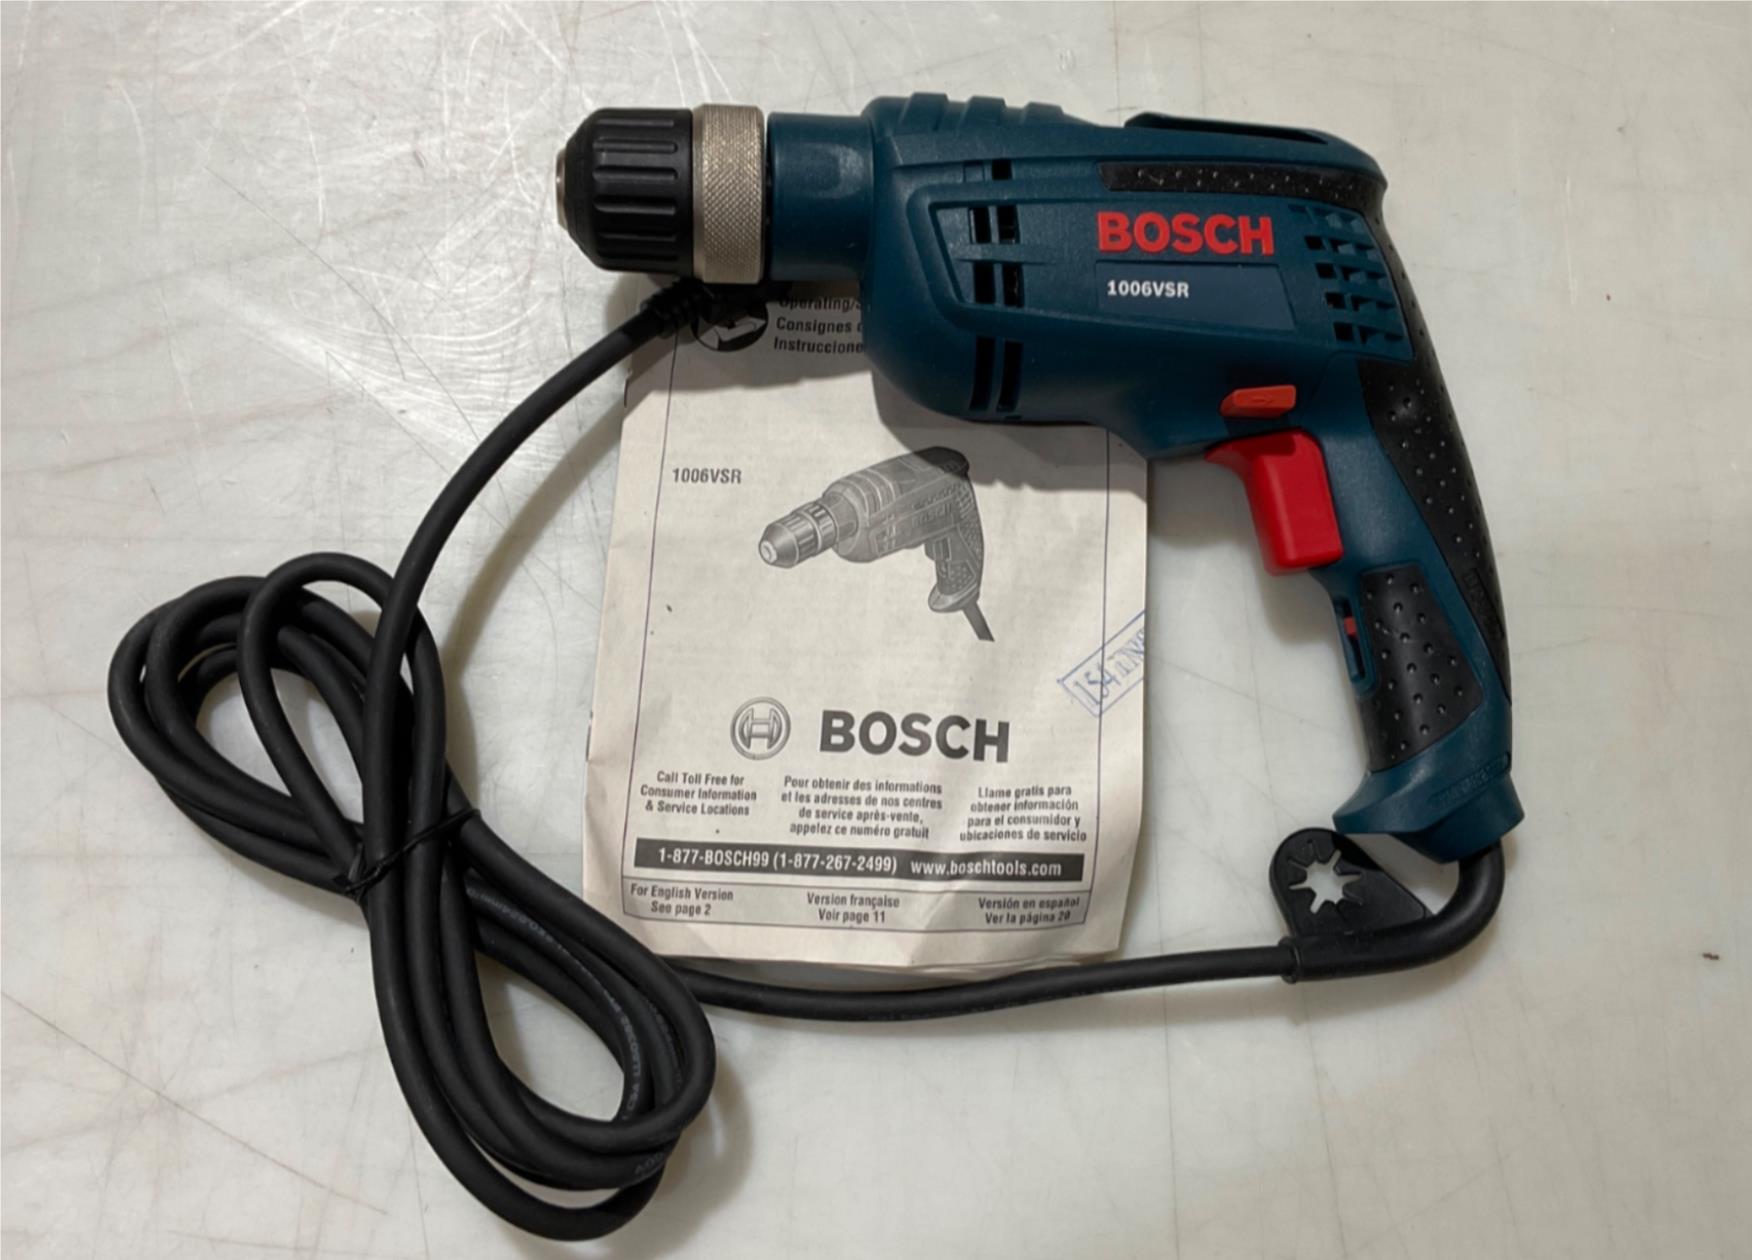 Bosch 1006VSR 3/8" Corded Drill 6.3Amp #20